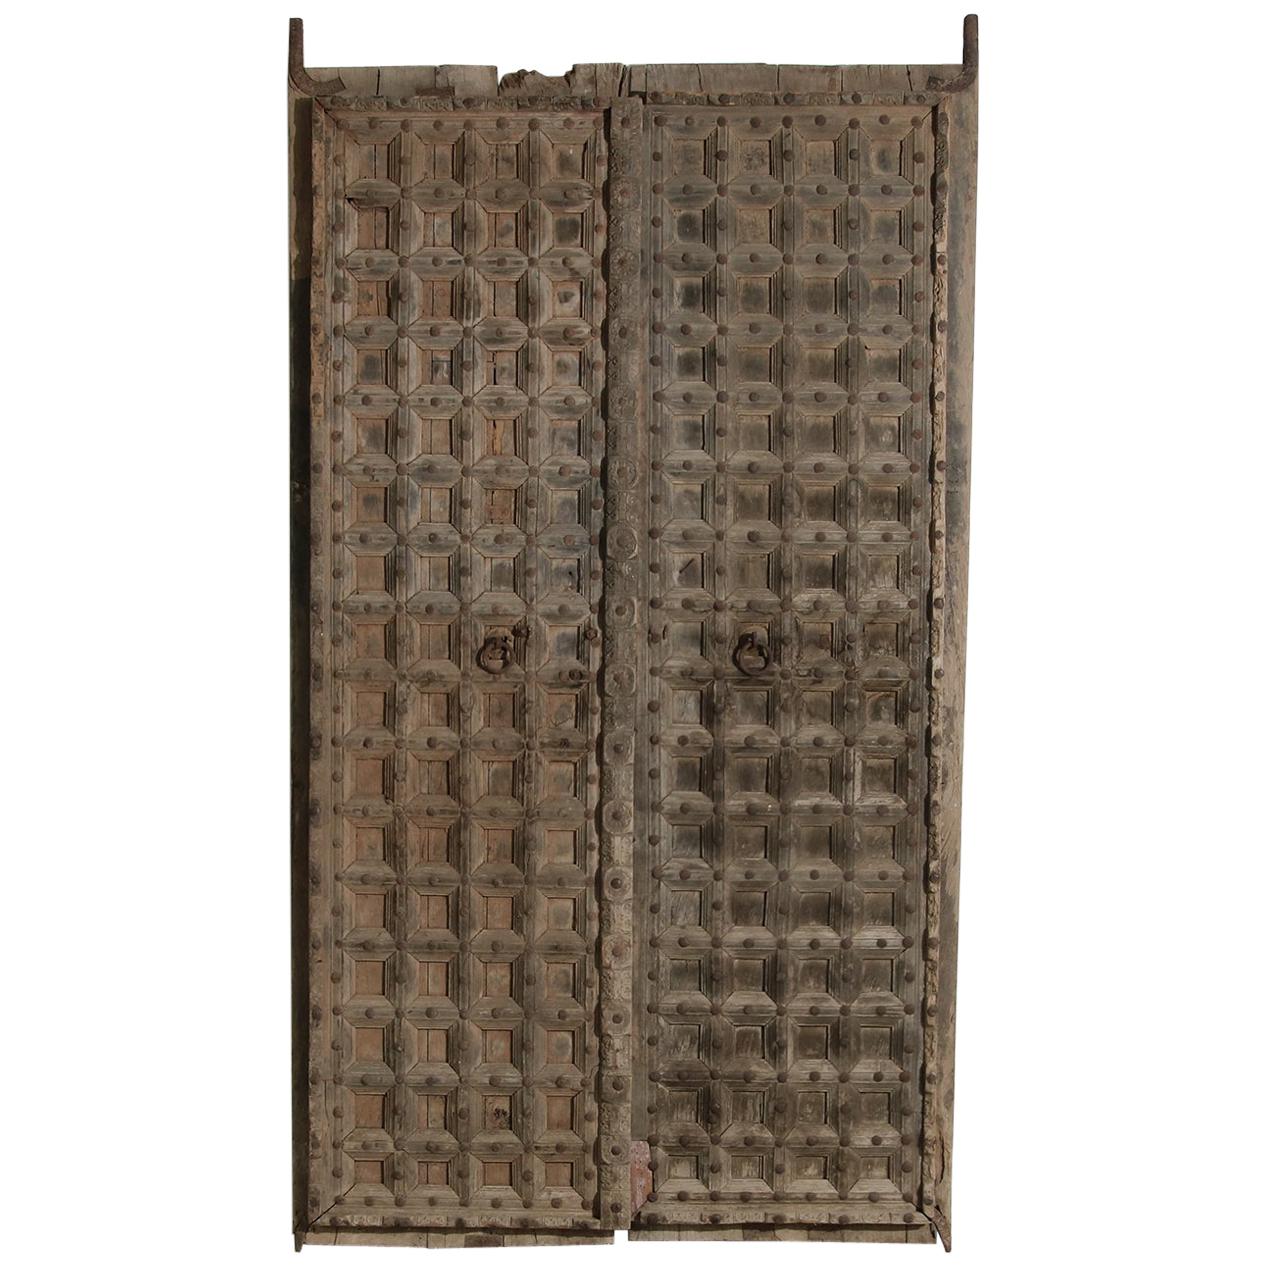 Vintage & Old Wooden Moroccan Door with Iron & Metal Knocker, Wabi Sabi, Antique